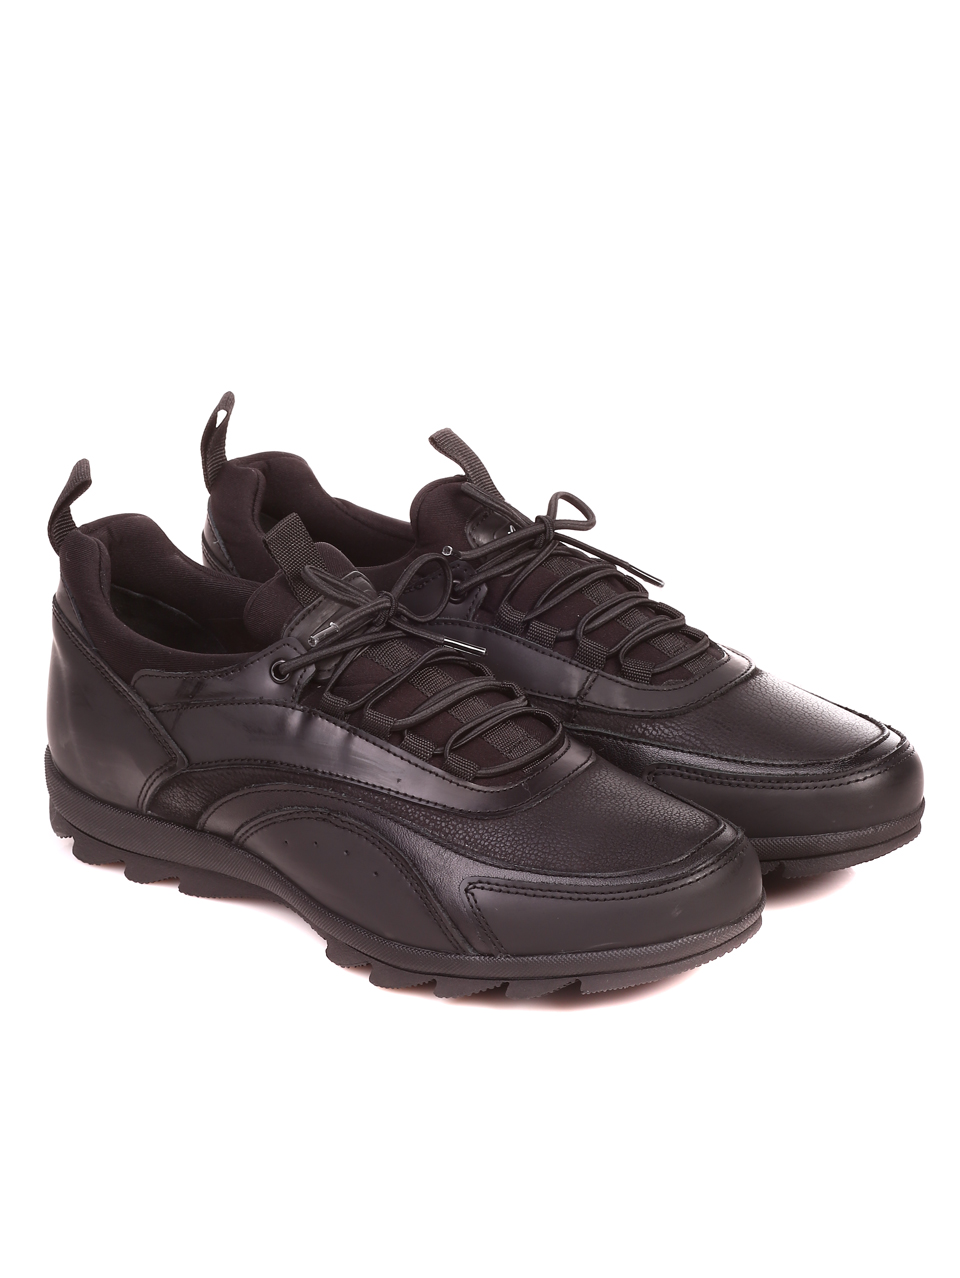 Ежедневни мъжки обувки от естествена кожа и естествен набук 7AT-21850 black